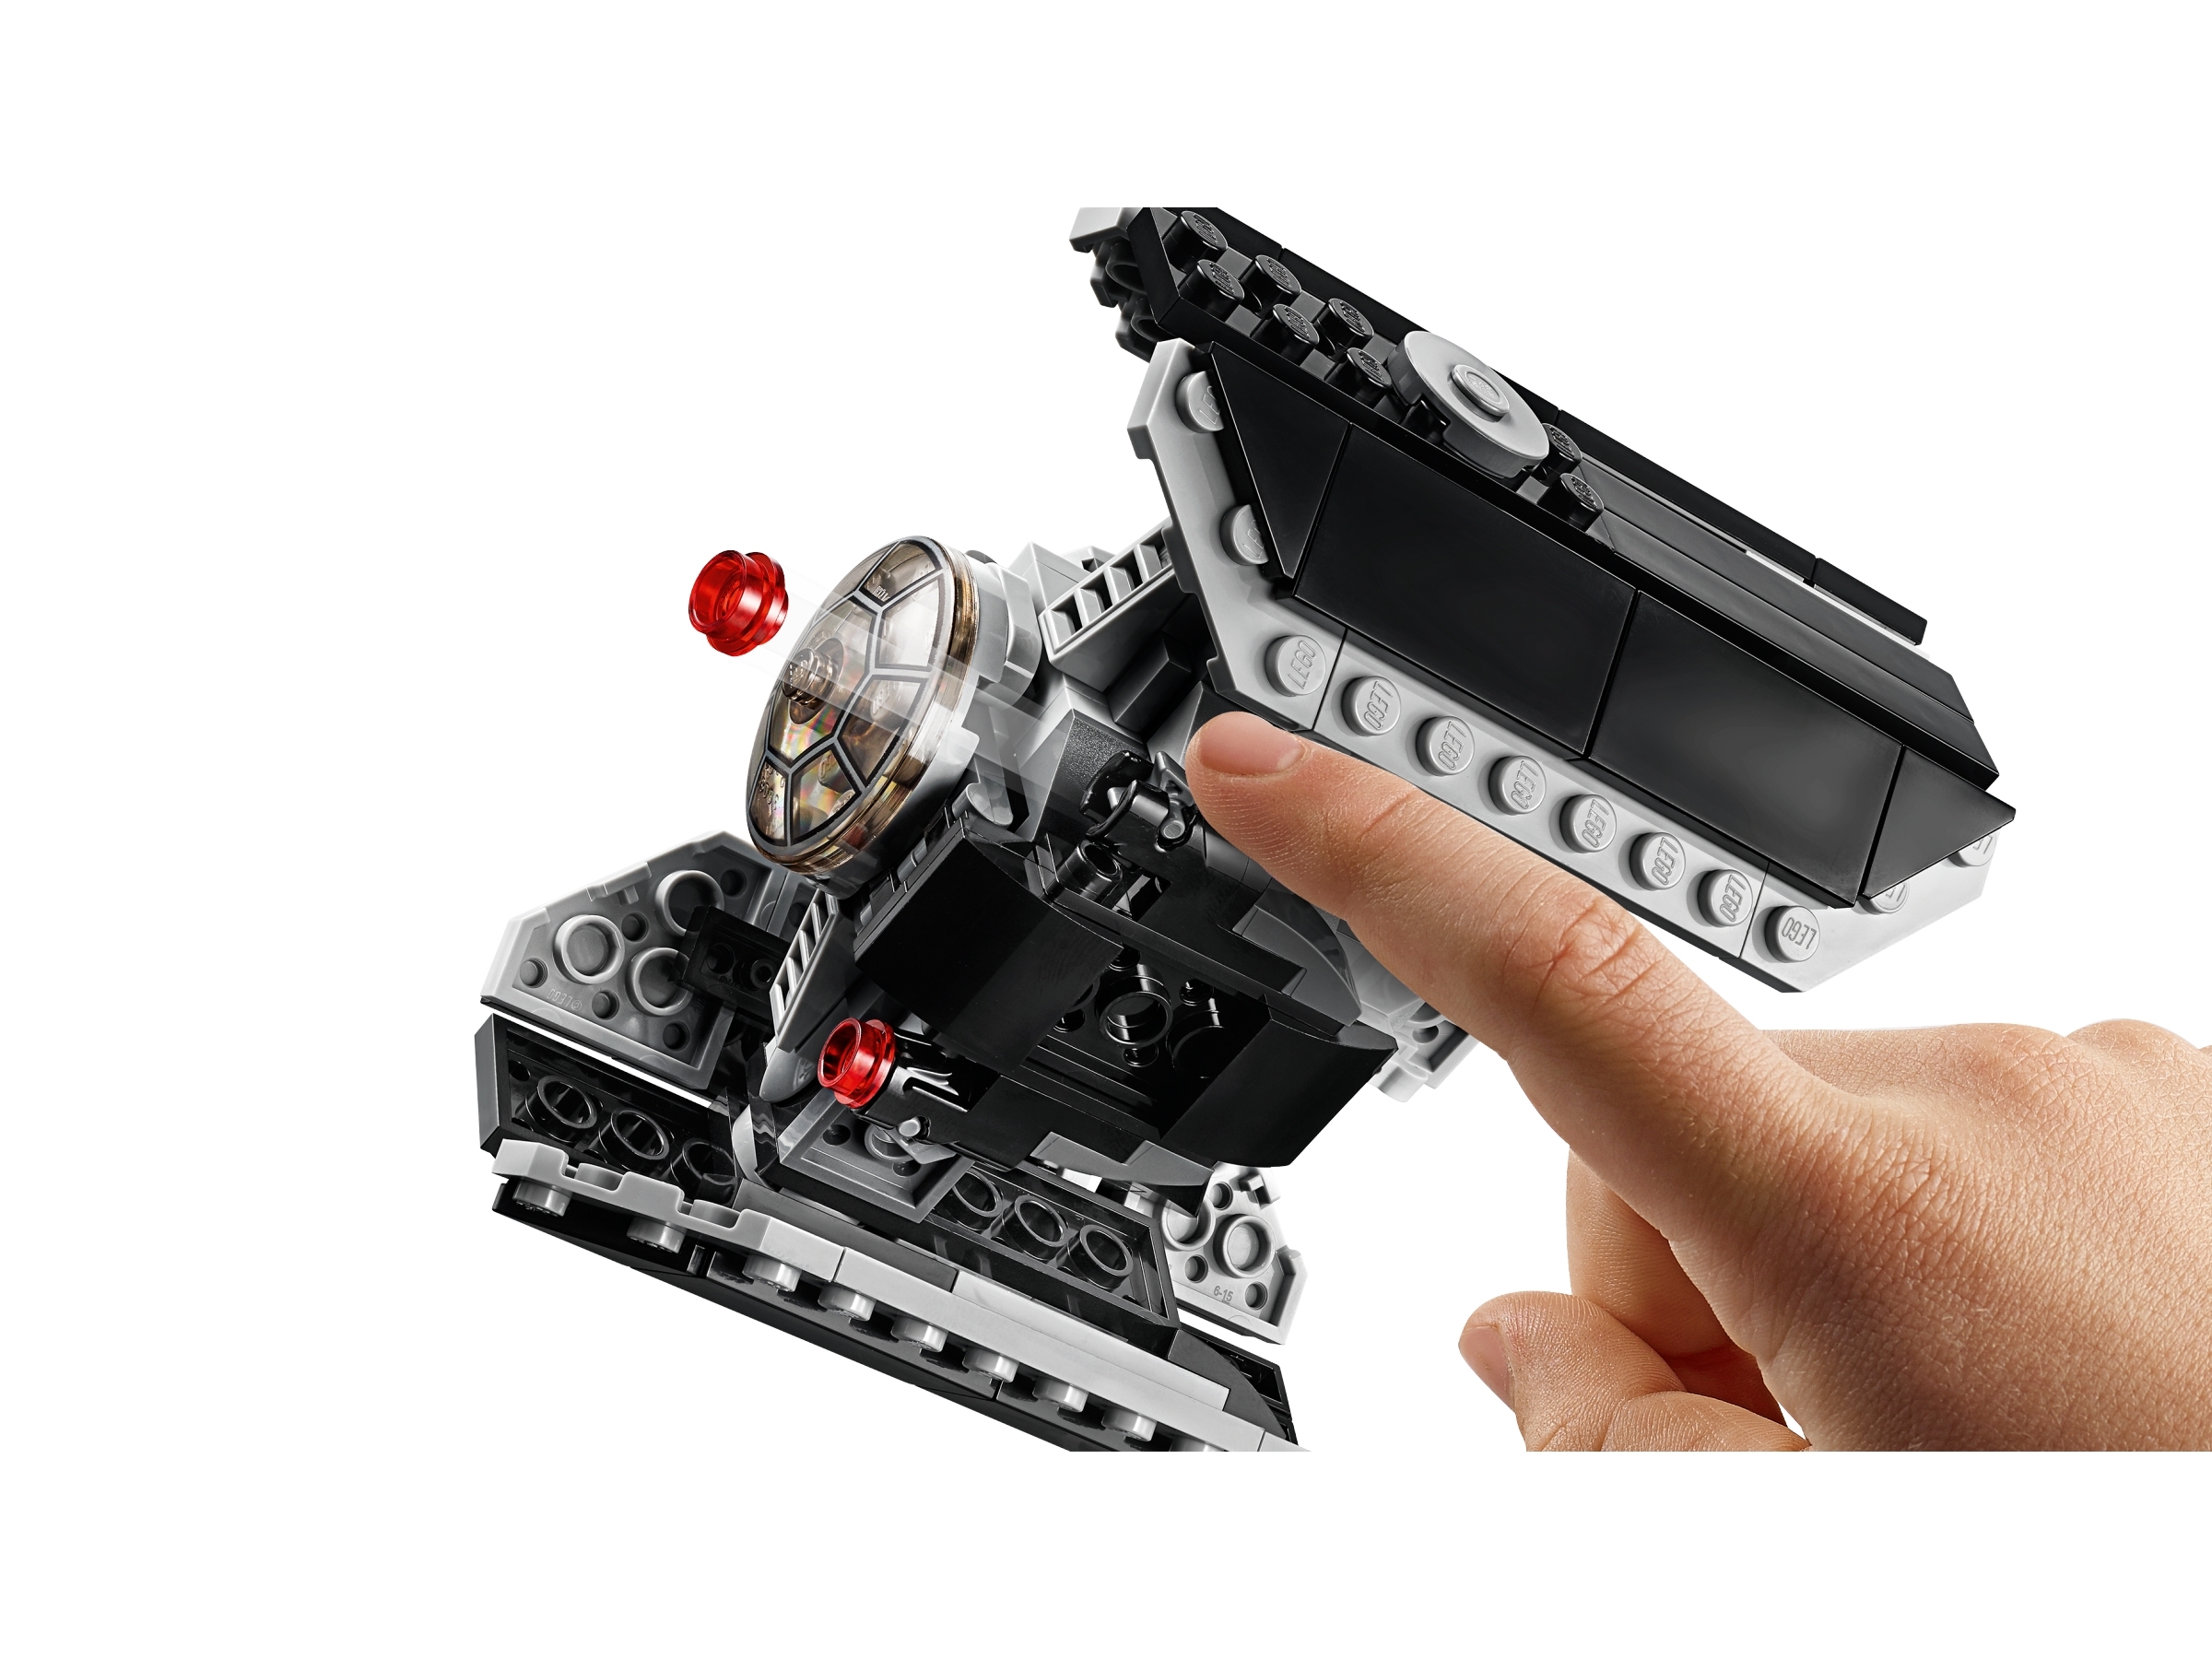 Darth Vader's Castle 75251 Wars™ Buy online at Official LEGO® Shop US